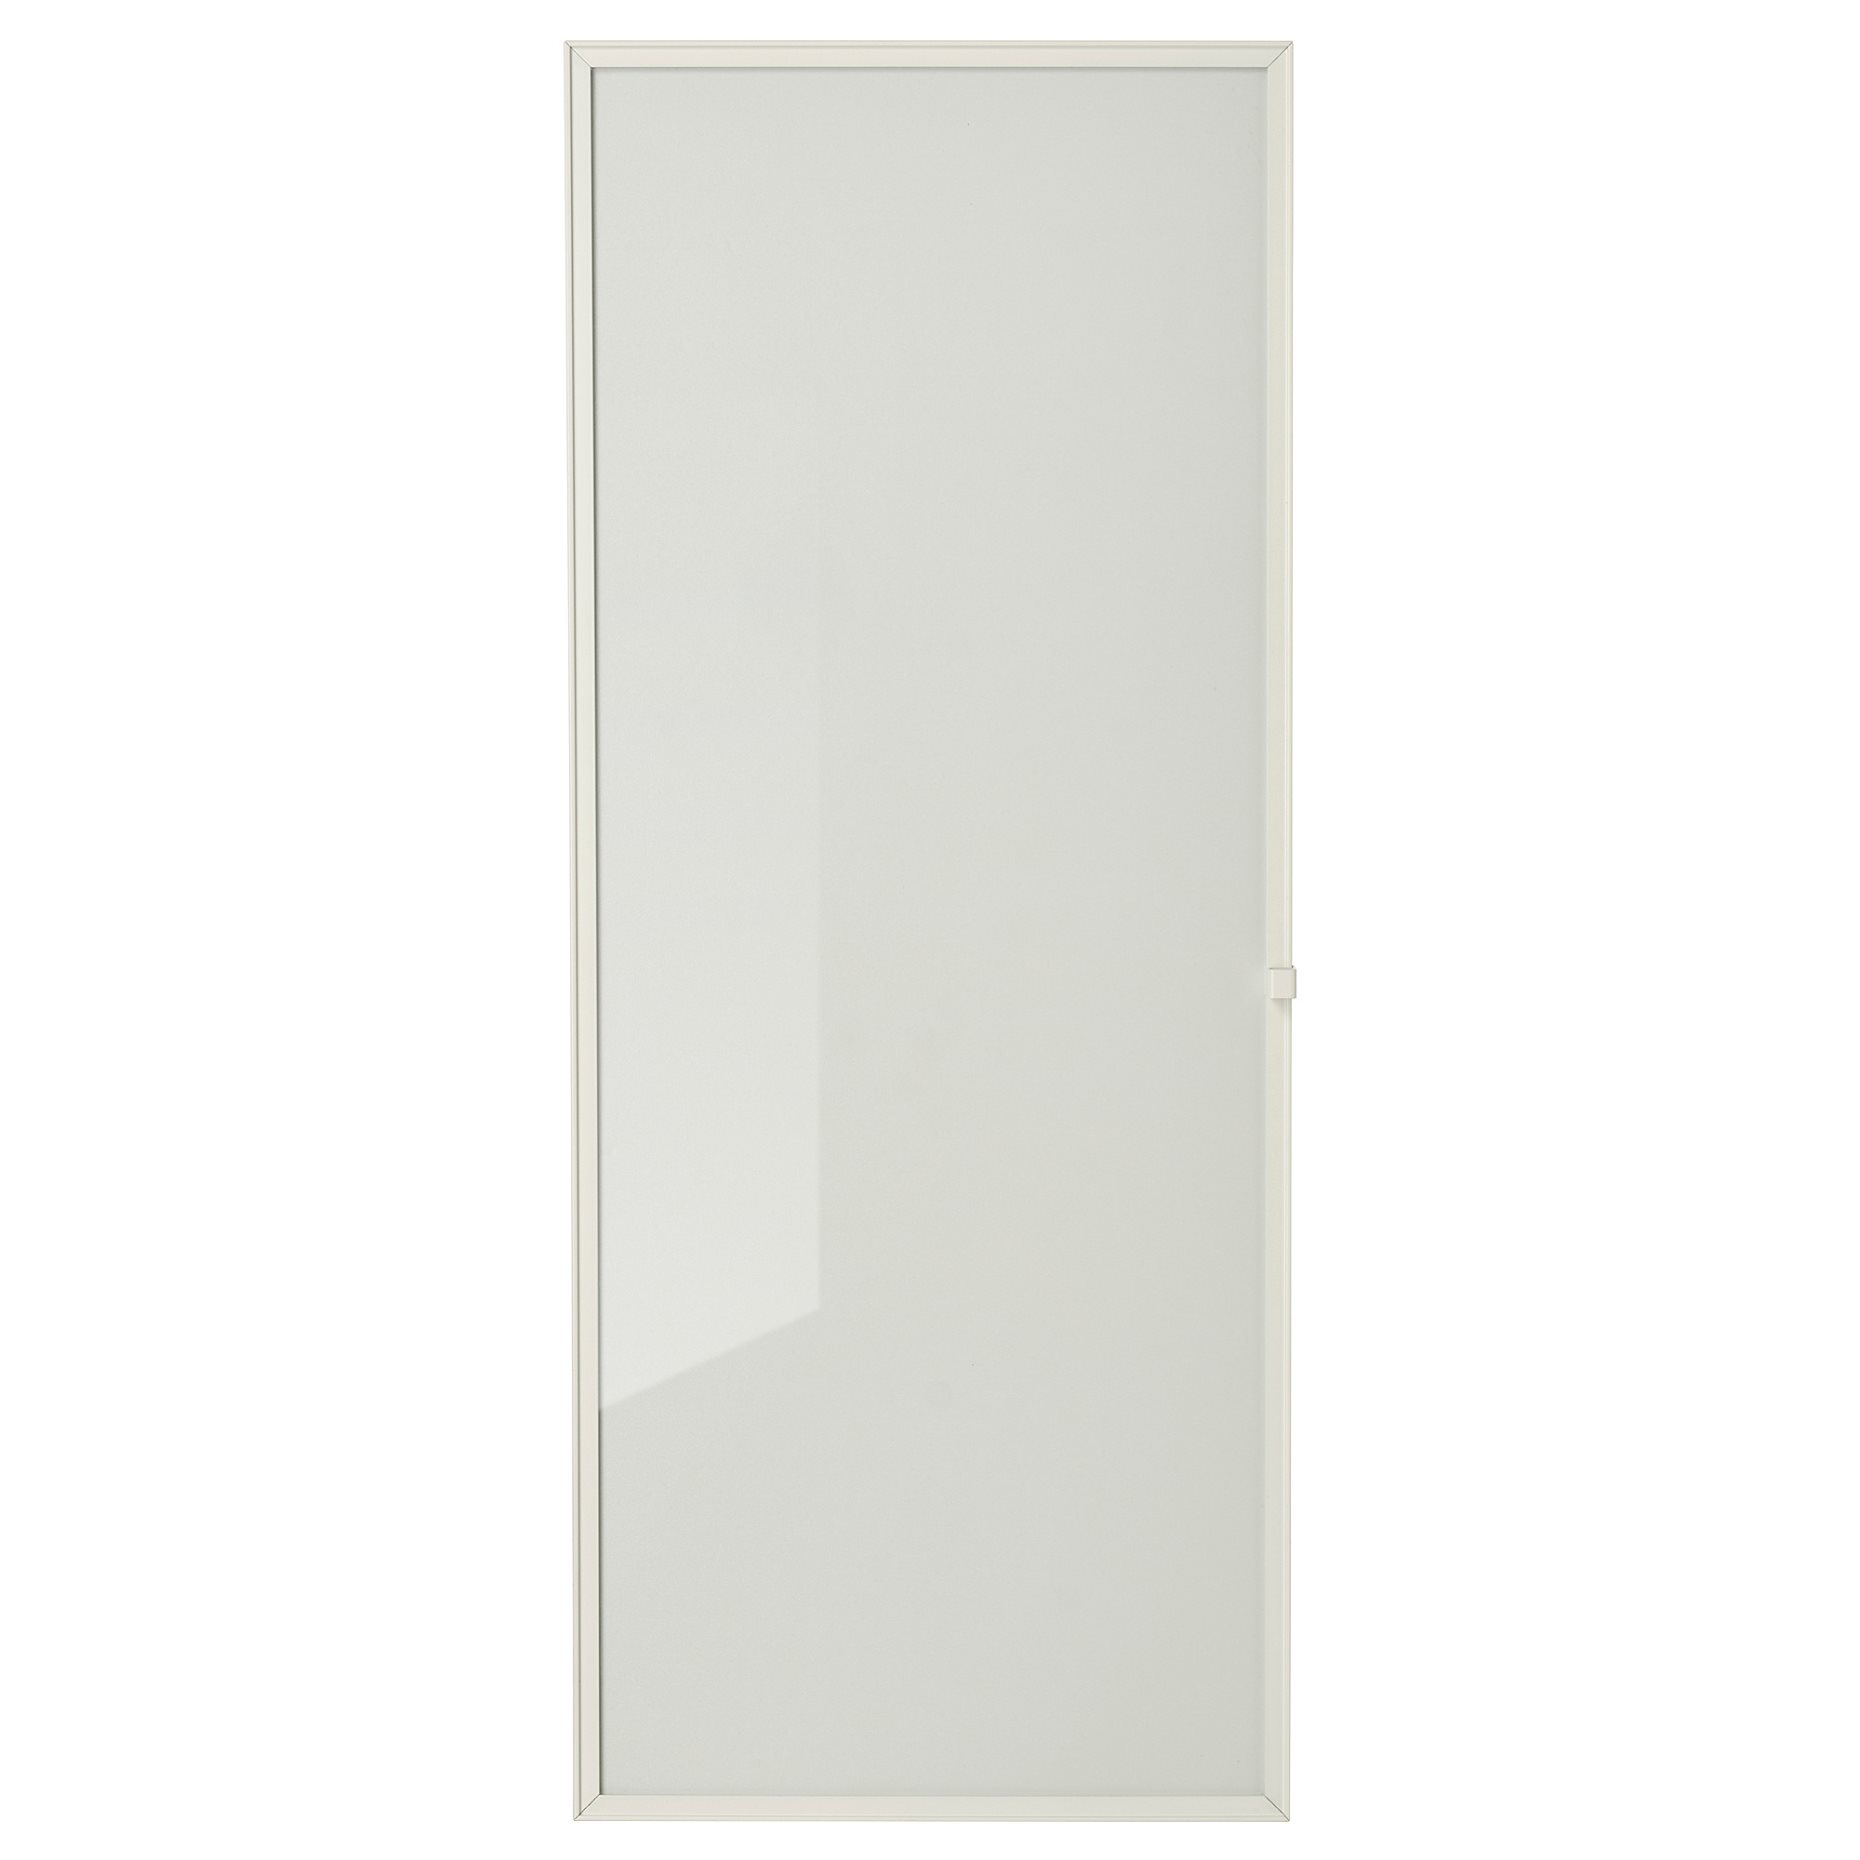 HÖGBO, glass door, 40x97 cm, 605.302.52